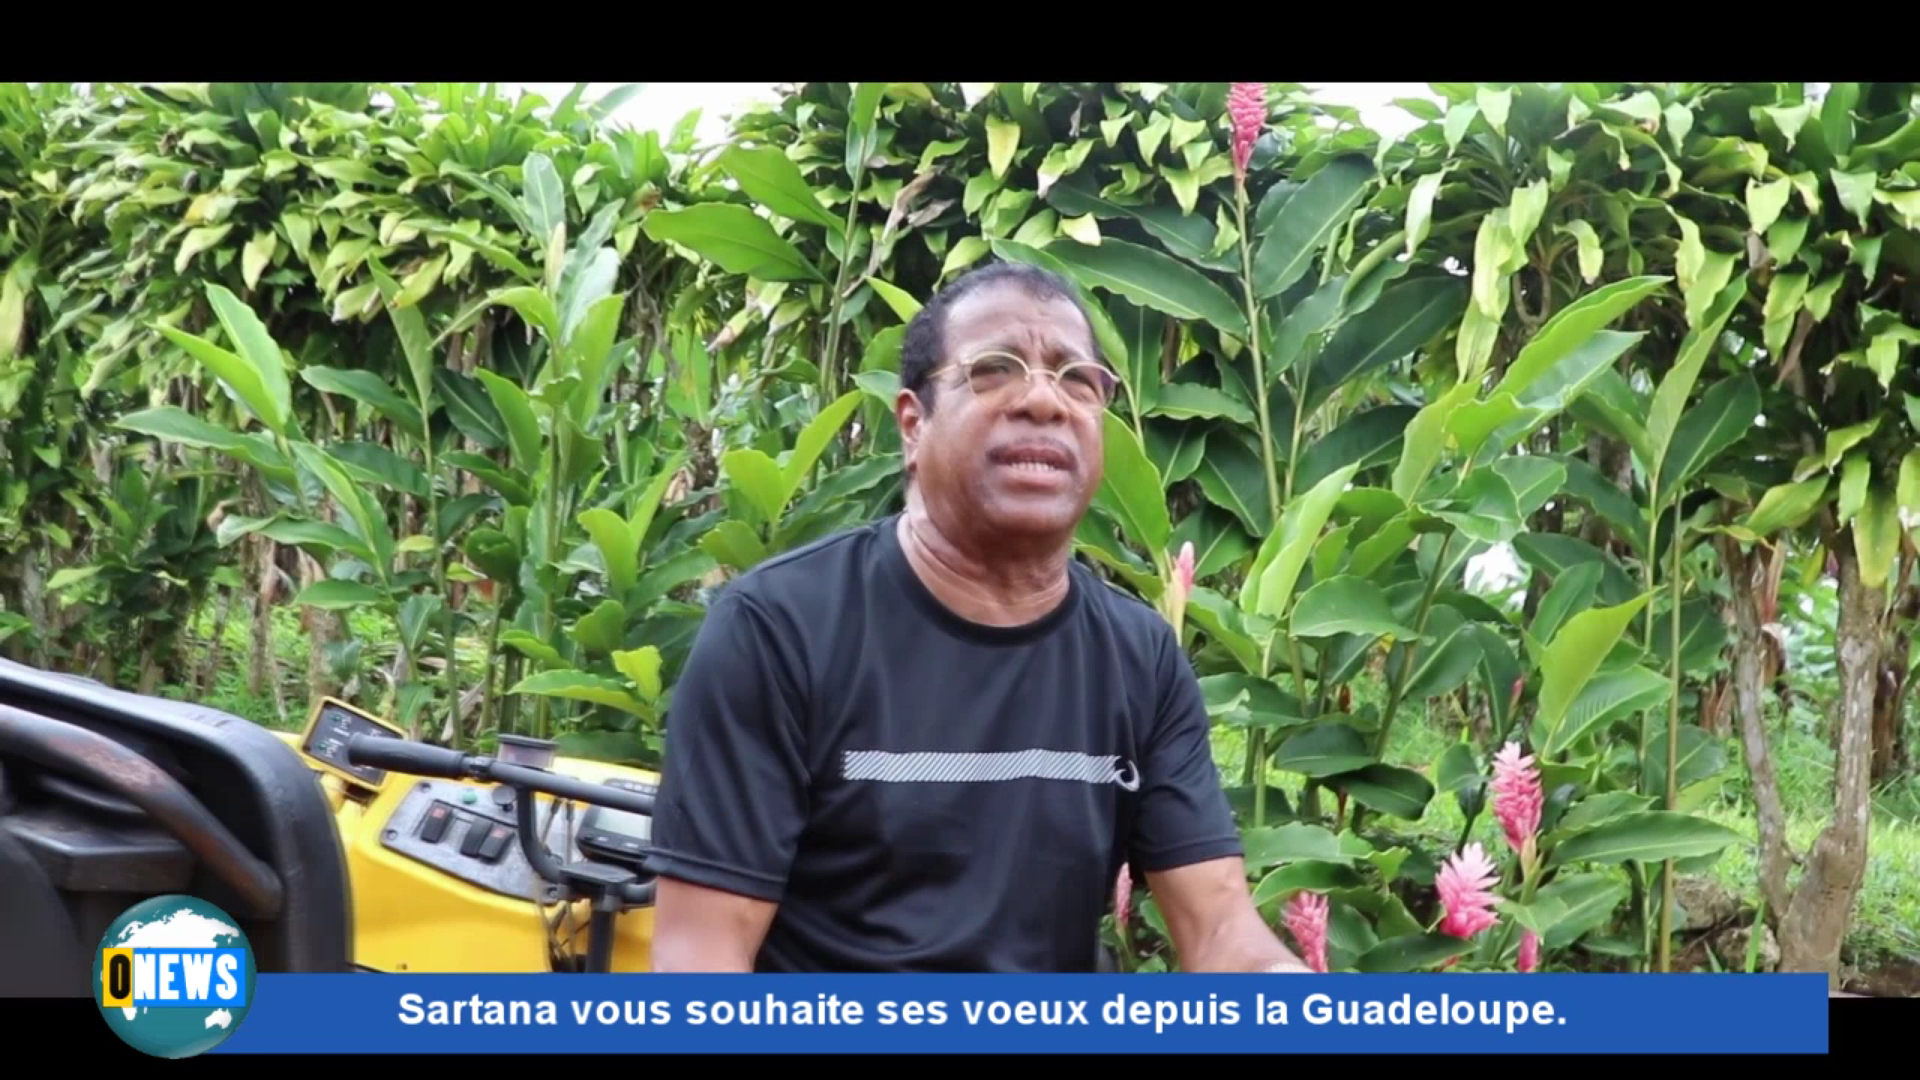 [Vidéo] Onews Spécial Voeux. Les voeux de Sartana depuis la Guadeloupe.